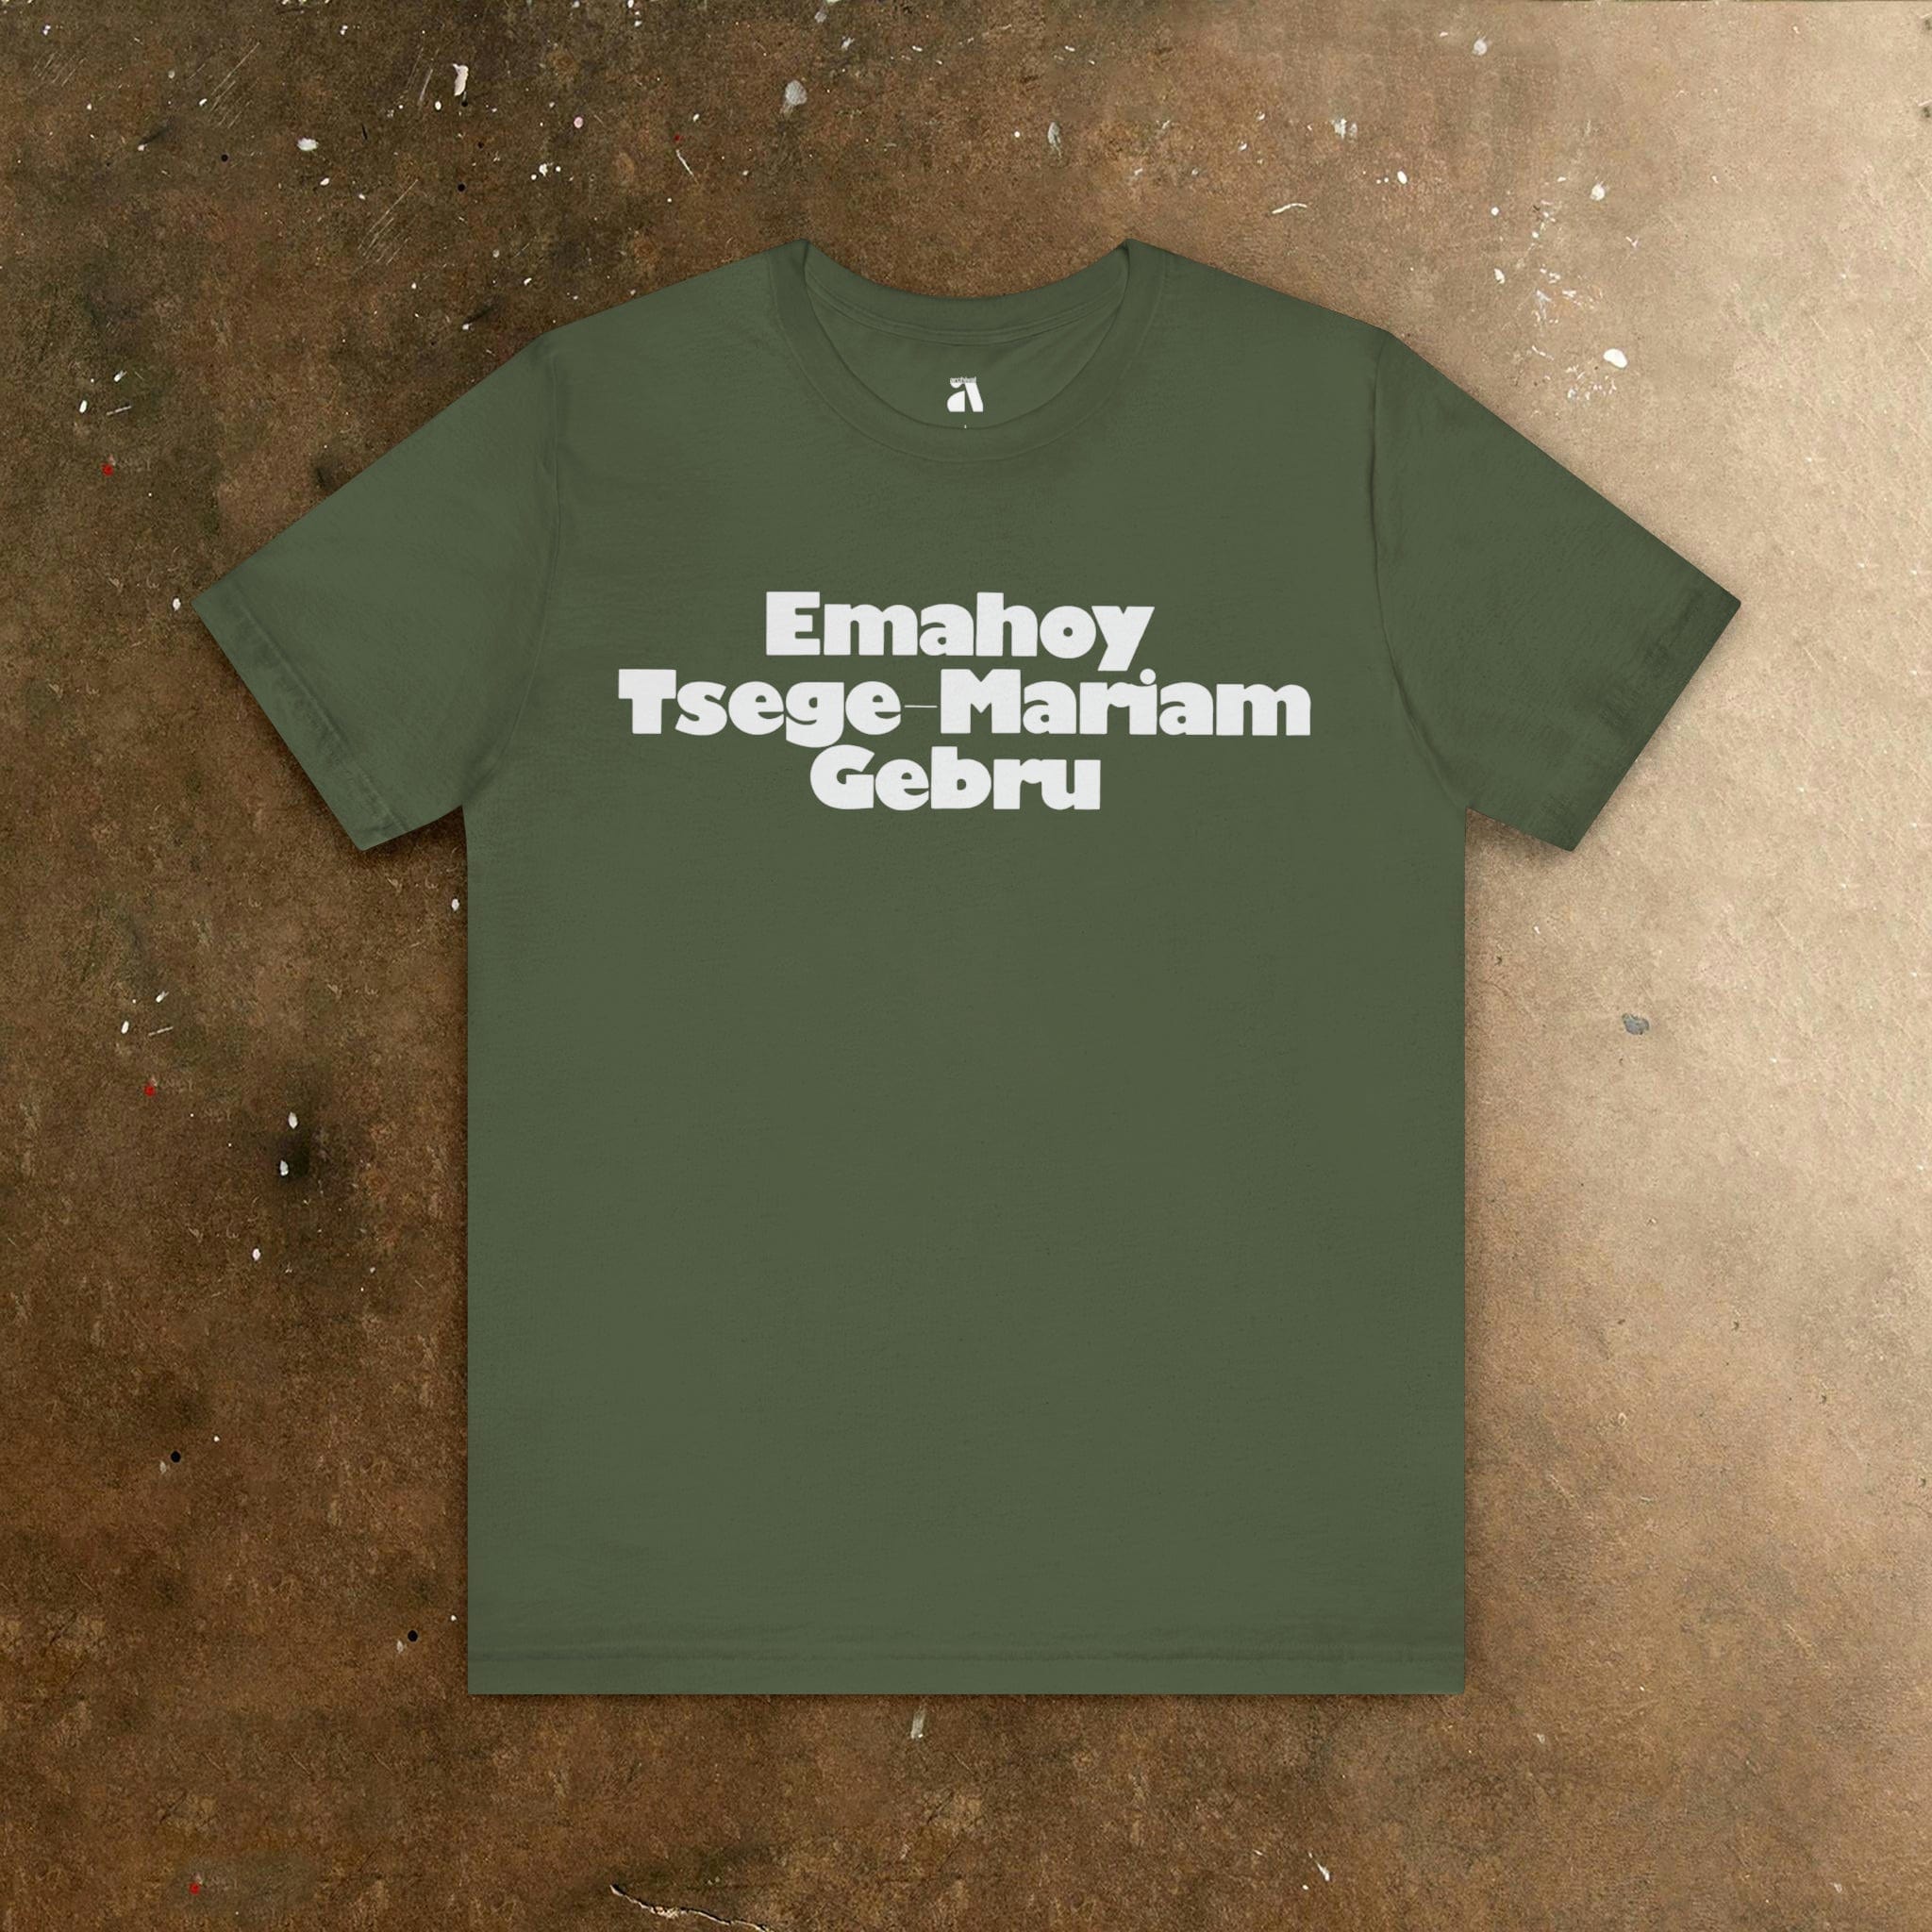 Emahoy Tsege-Miriam Gebru: Emblem T-Shirt